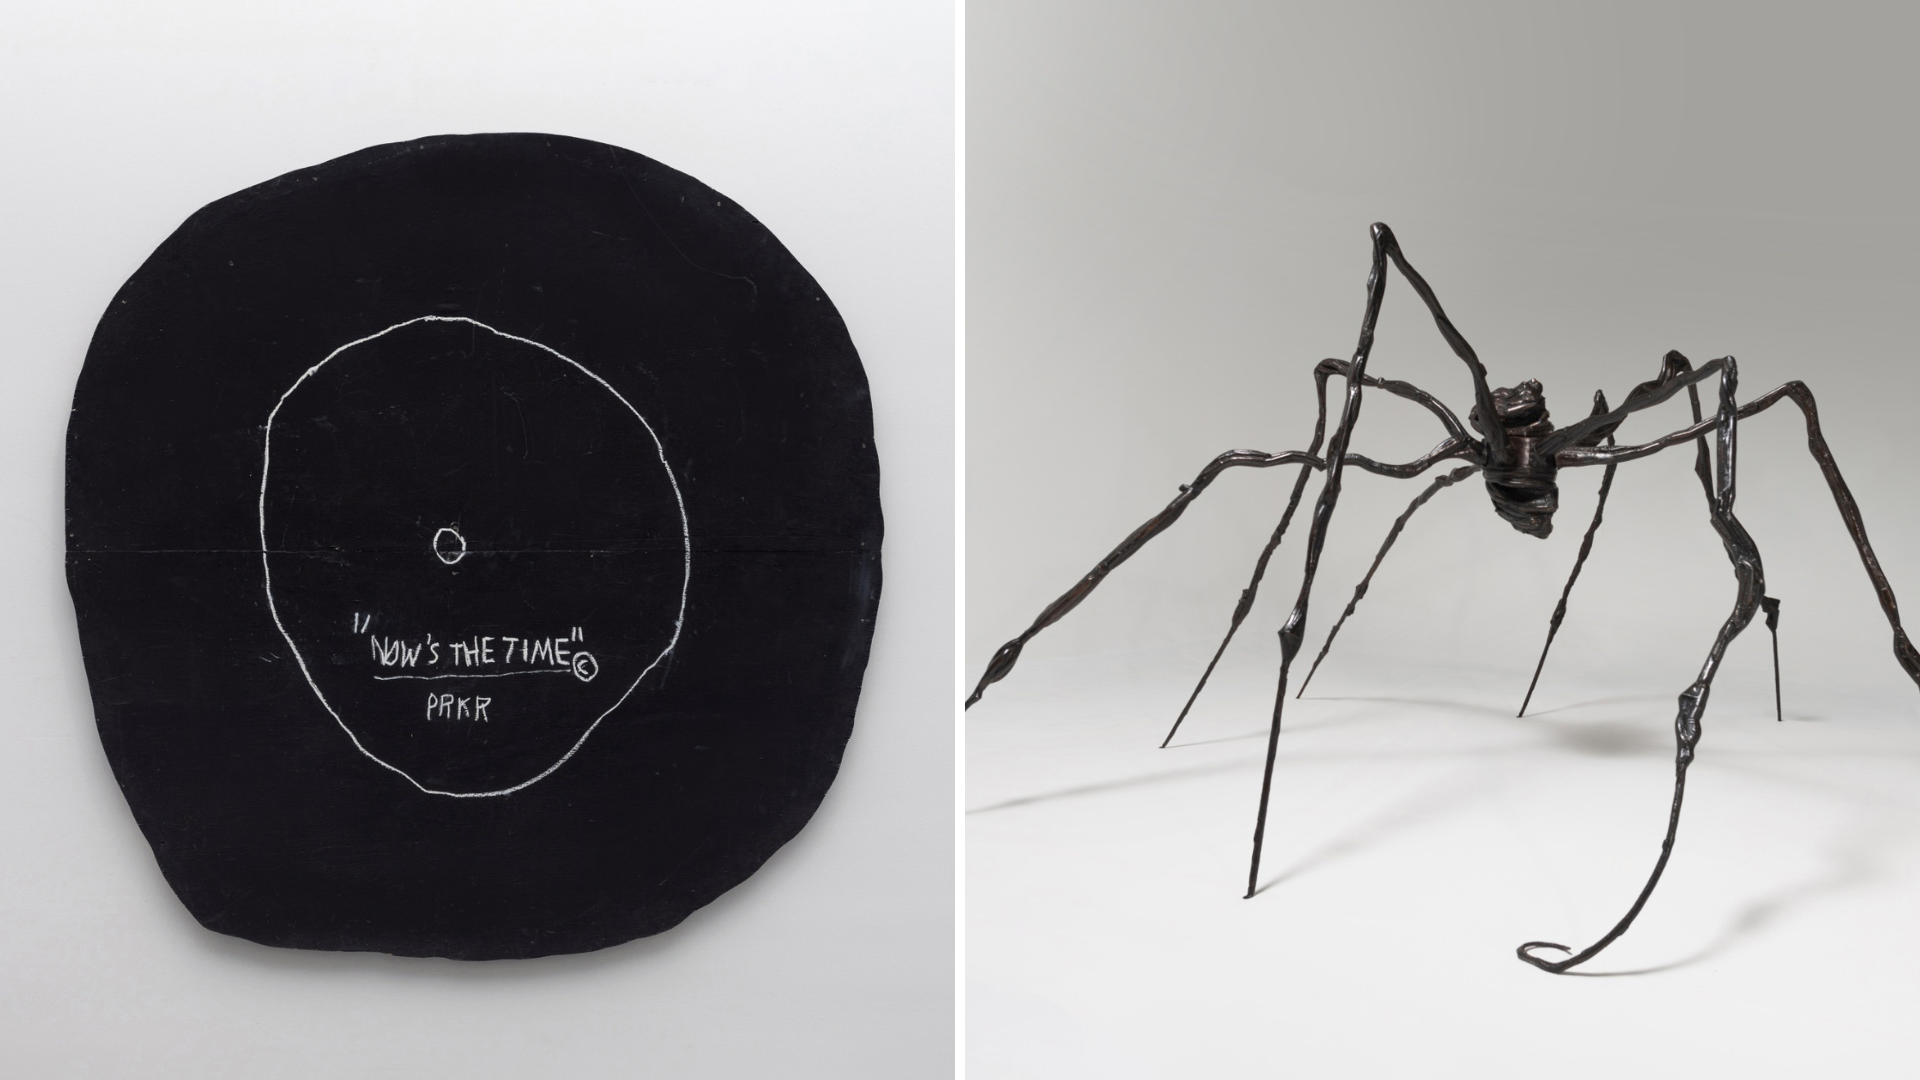 Subastaron dos obras millonarias: el “disco” de Basquiat y una araña de Louise Bourgeois